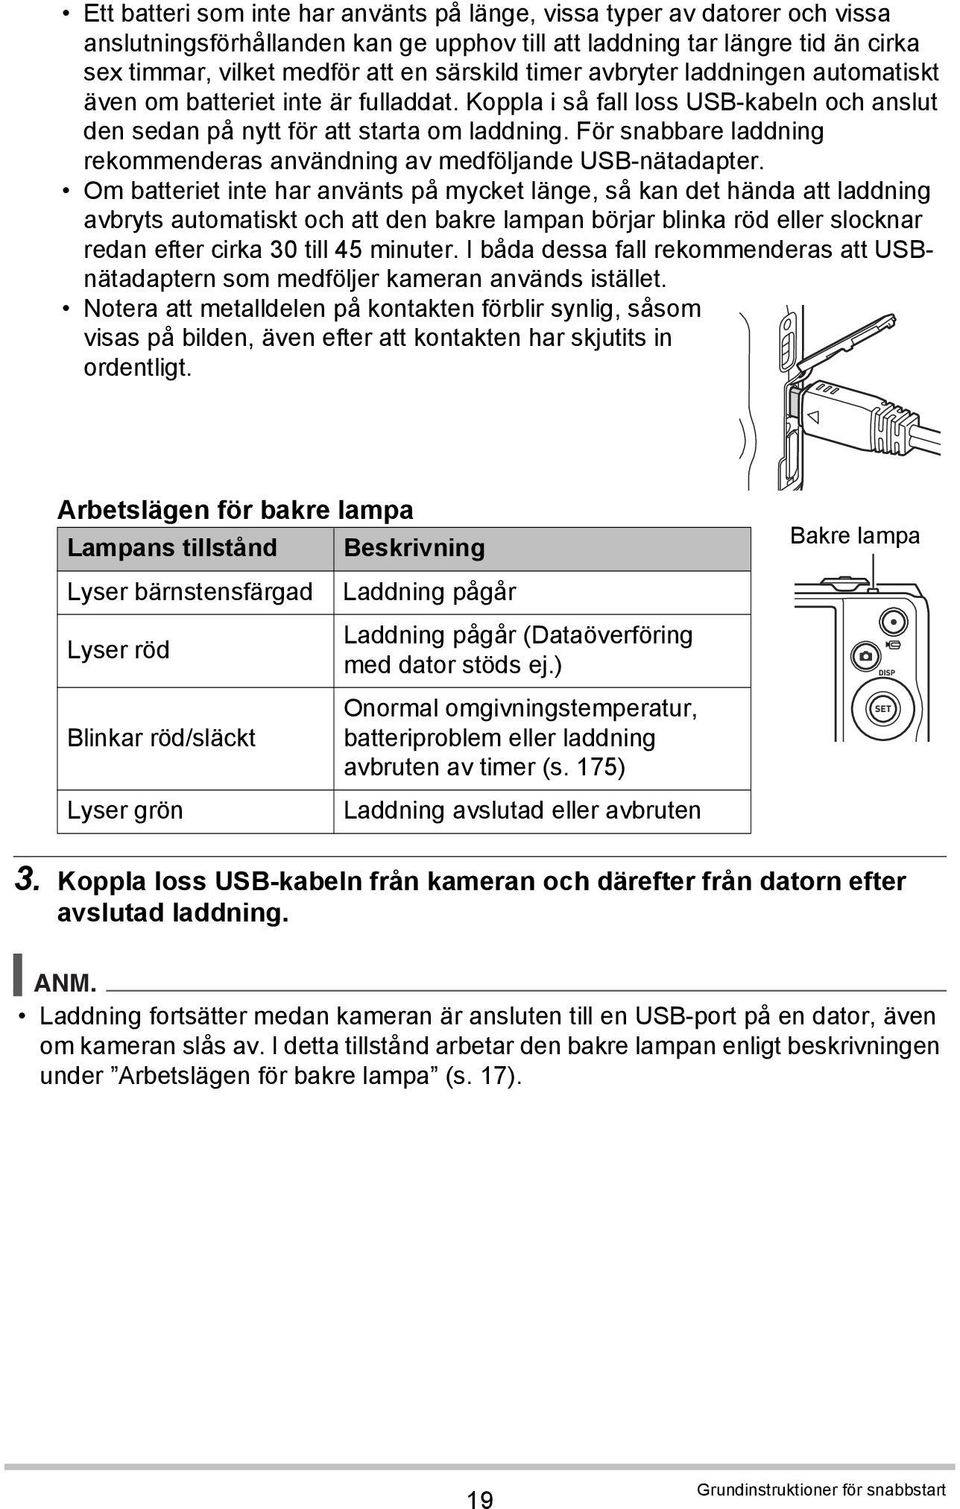 För snabbare laddning rekommenderas användning av medföljande USB-nätadapter.